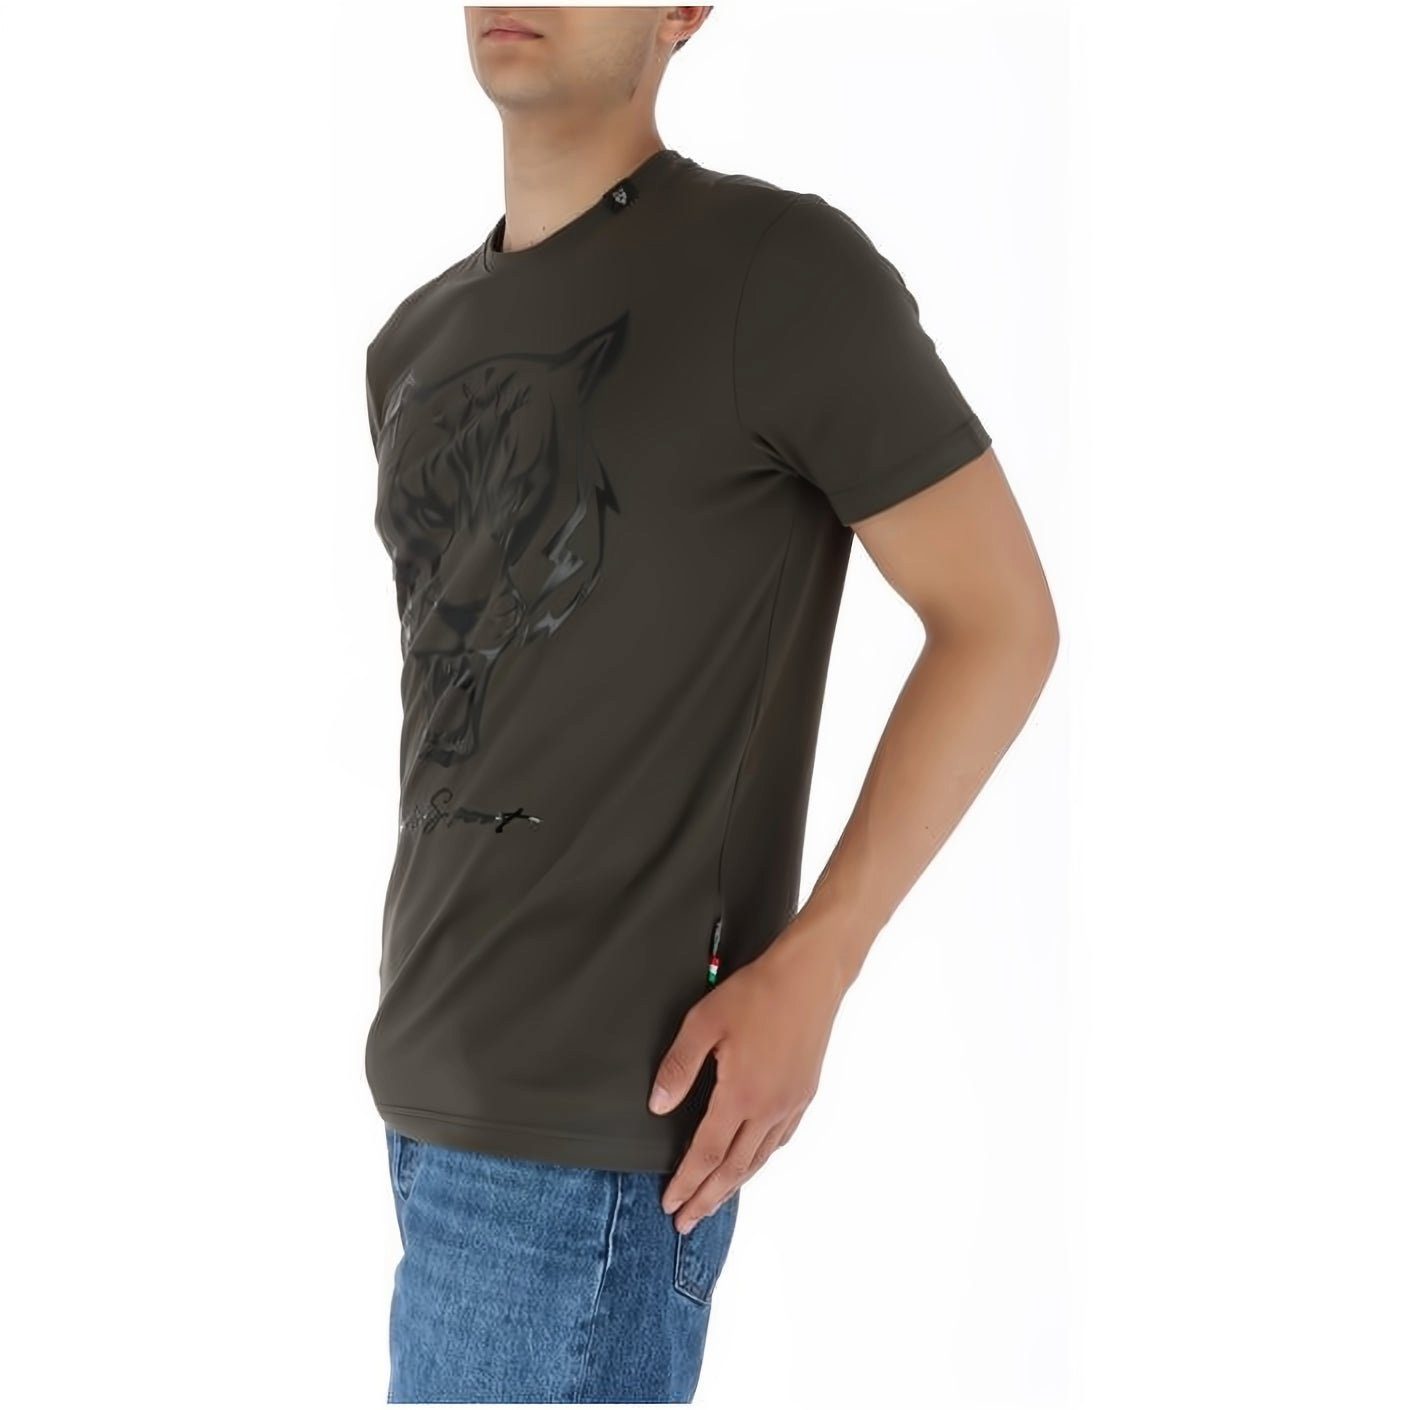 PLEIN SPORT Look, Tragekomfort, vielfältige T-Shirt Stylischer ROUND Farbauswahl hoher NECK